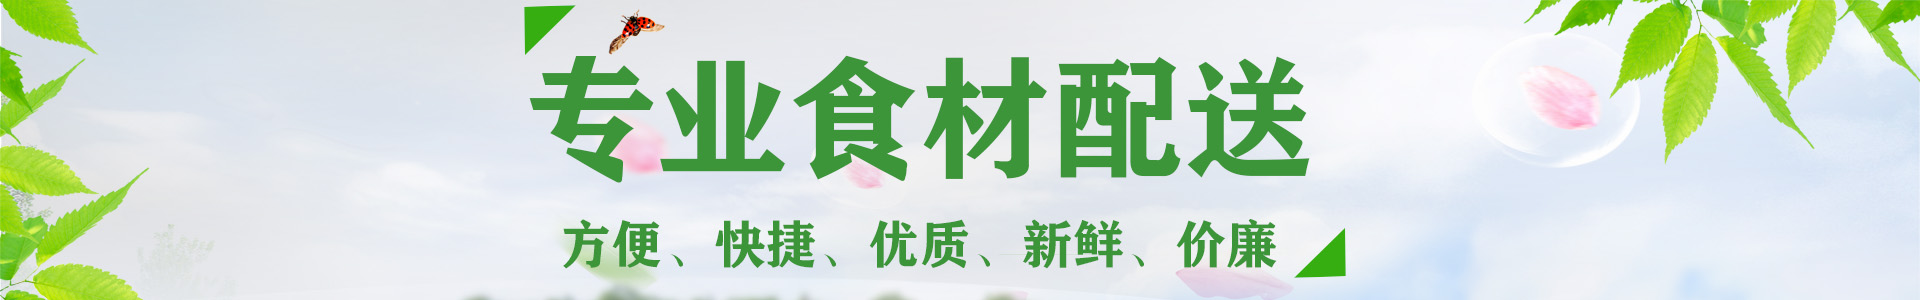 广东视频视频APP在线看农产品有限公司